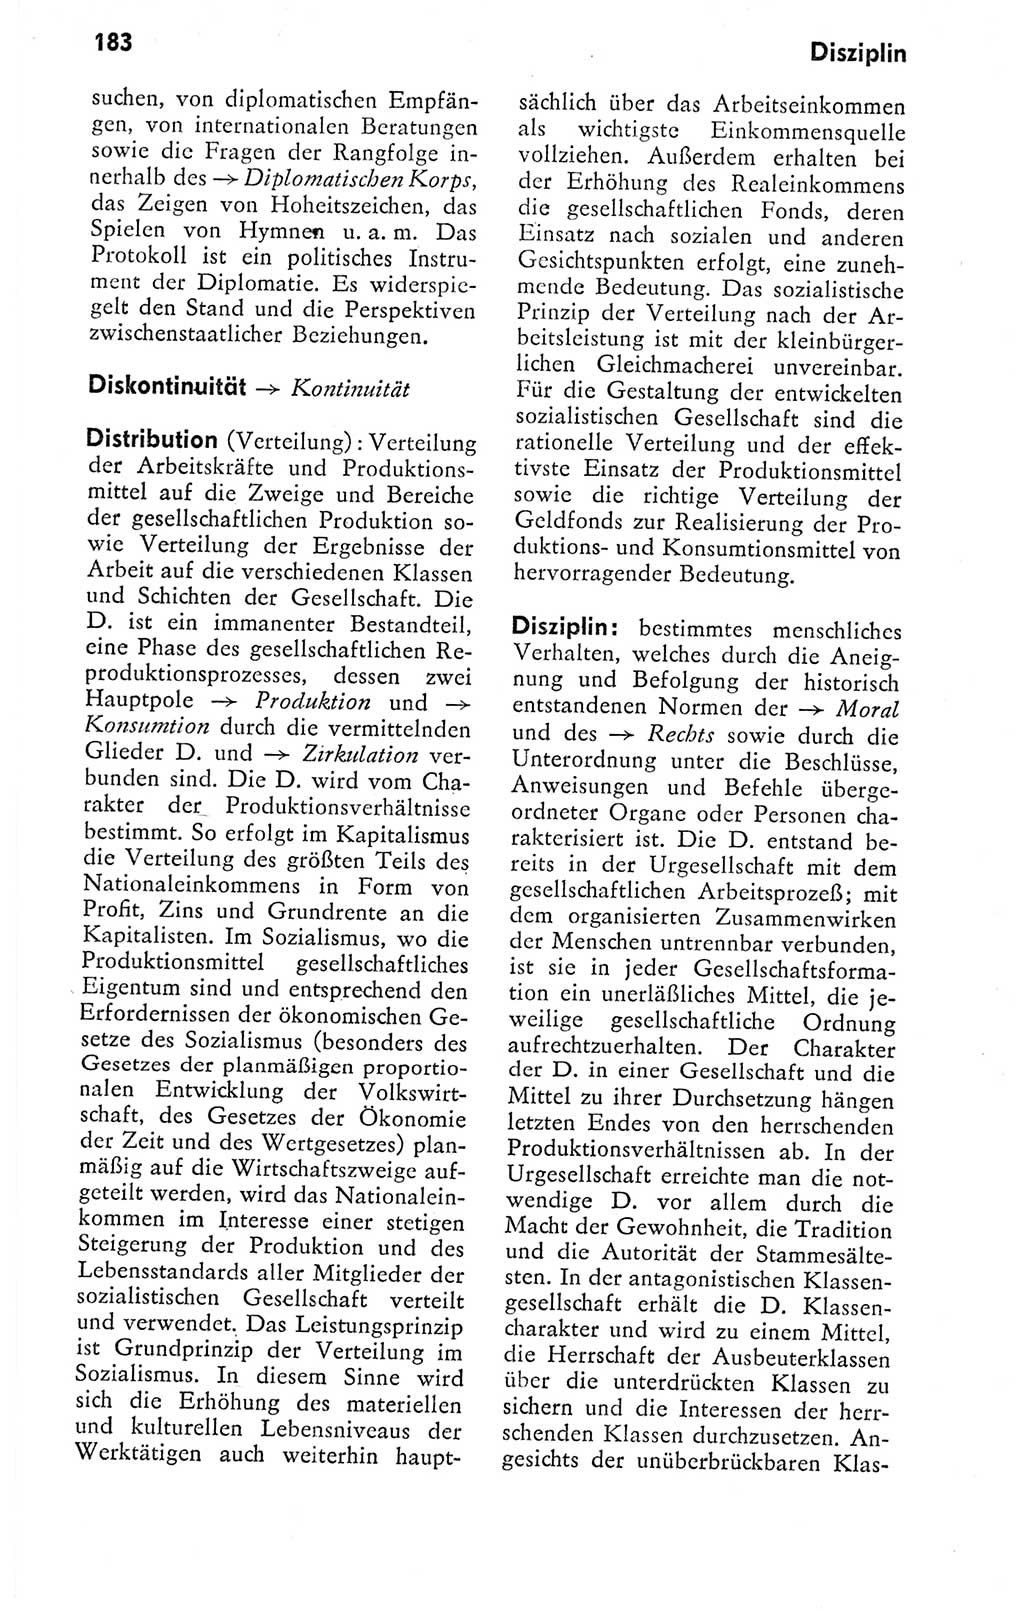 Kleines politisches Wörterbuch [Deutsche Demokratische Republik (DDR)] 1978, Seite 183 (Kl. pol. Wb. DDR 1978, S. 183)